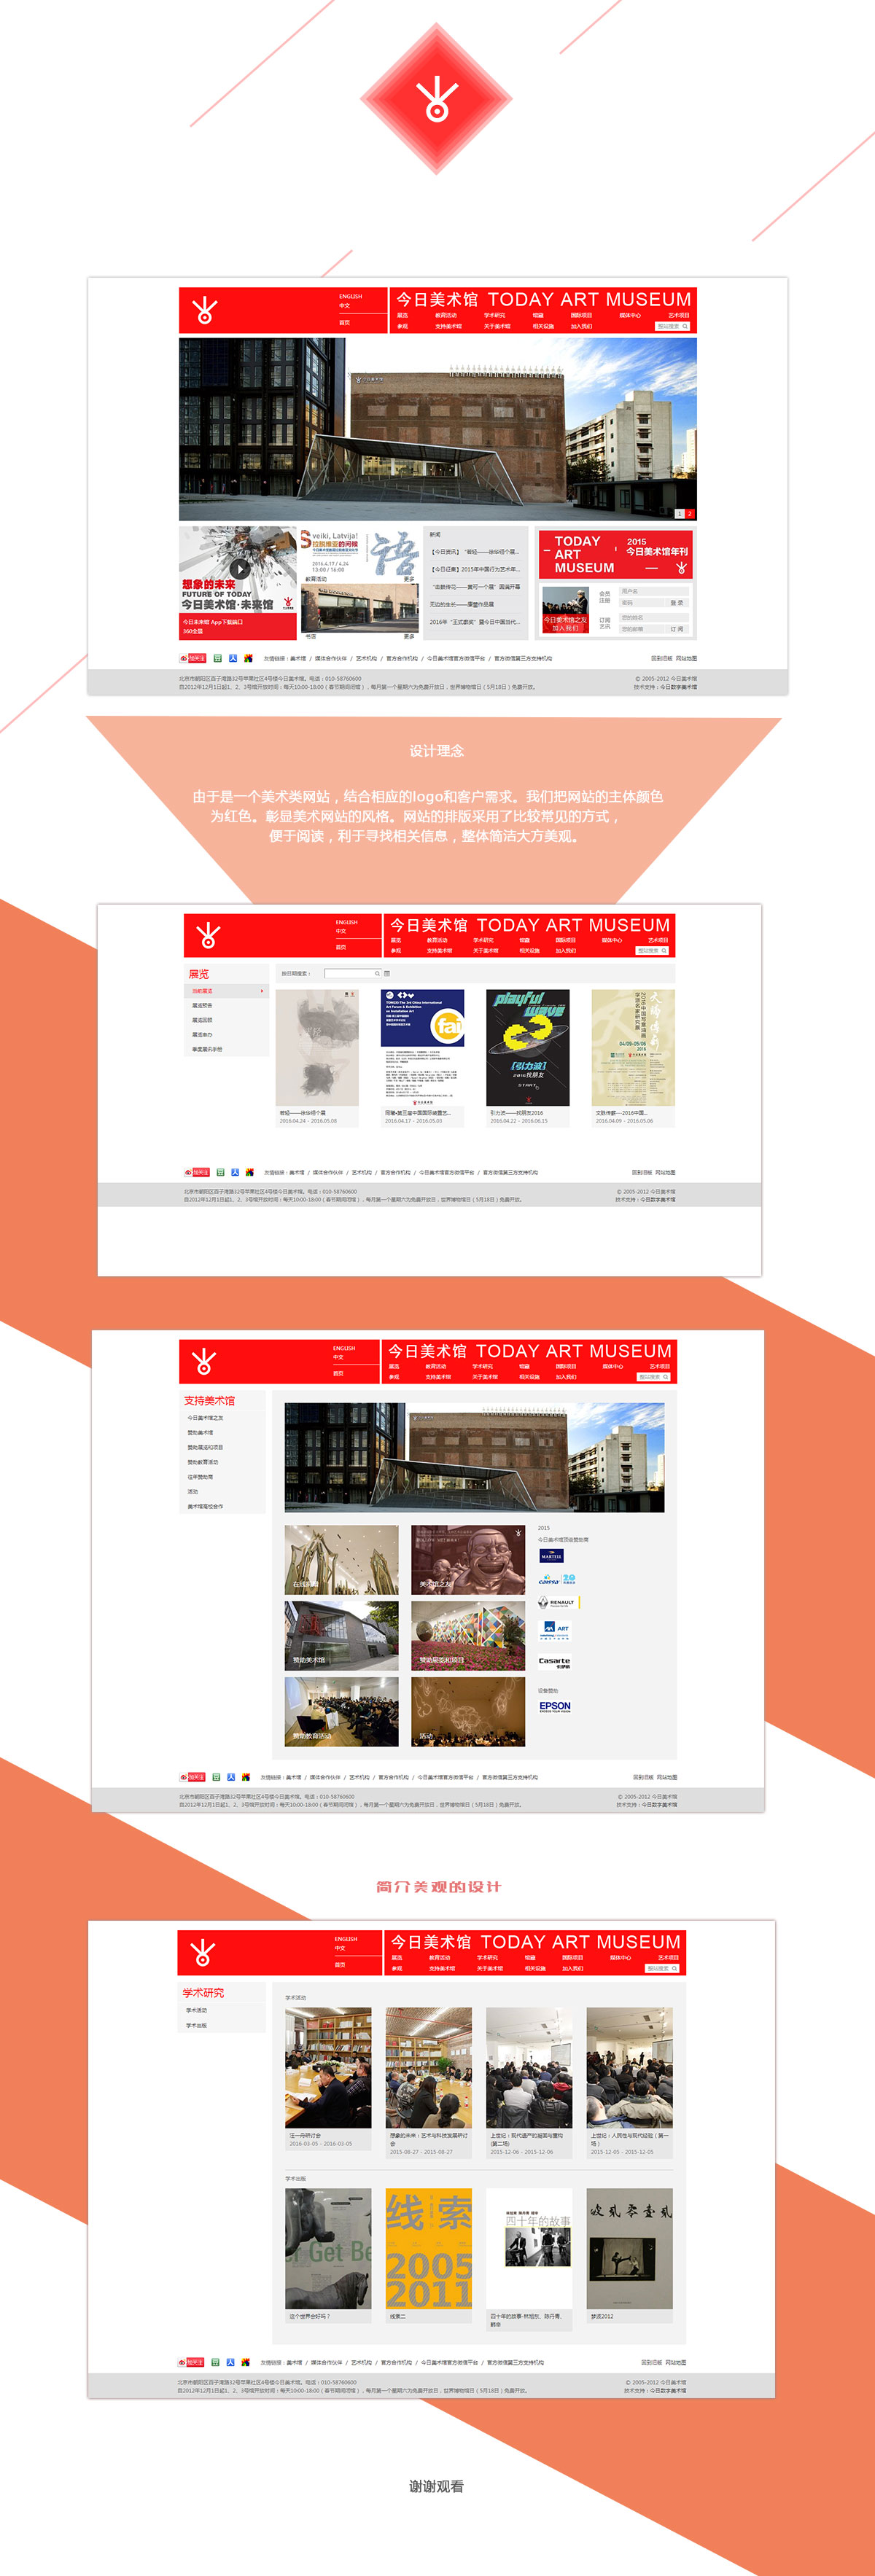 北京中联学艺科技有限公司 网站开发案例 今日美术馆